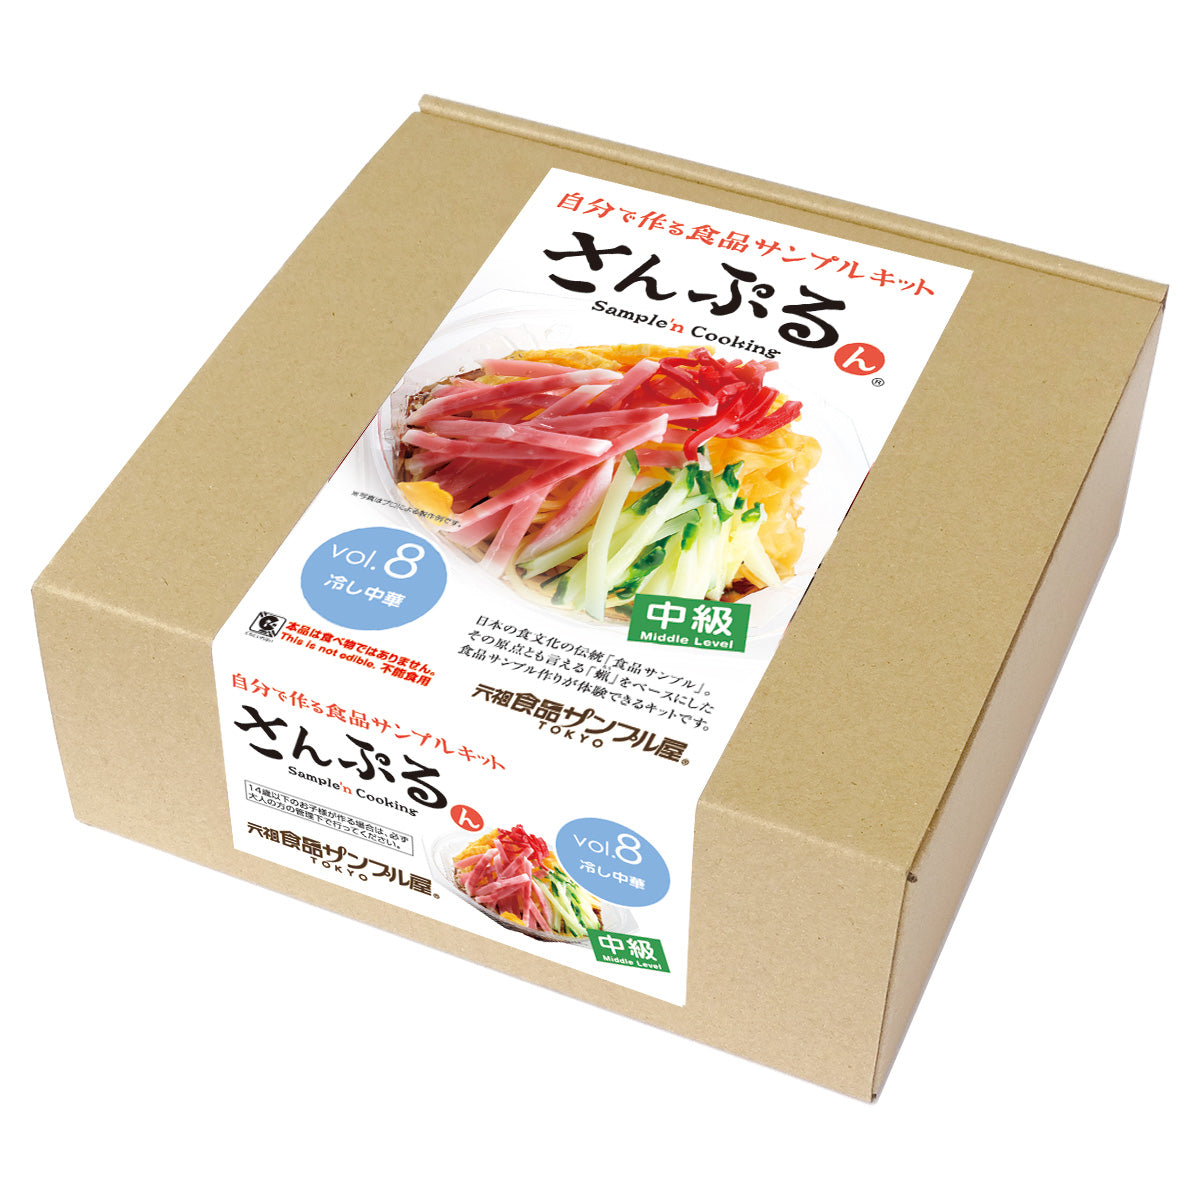 これは自分でつくる食品サンプルキット「さんぷるんVol.8 冷やし中華」の外箱の写真です。